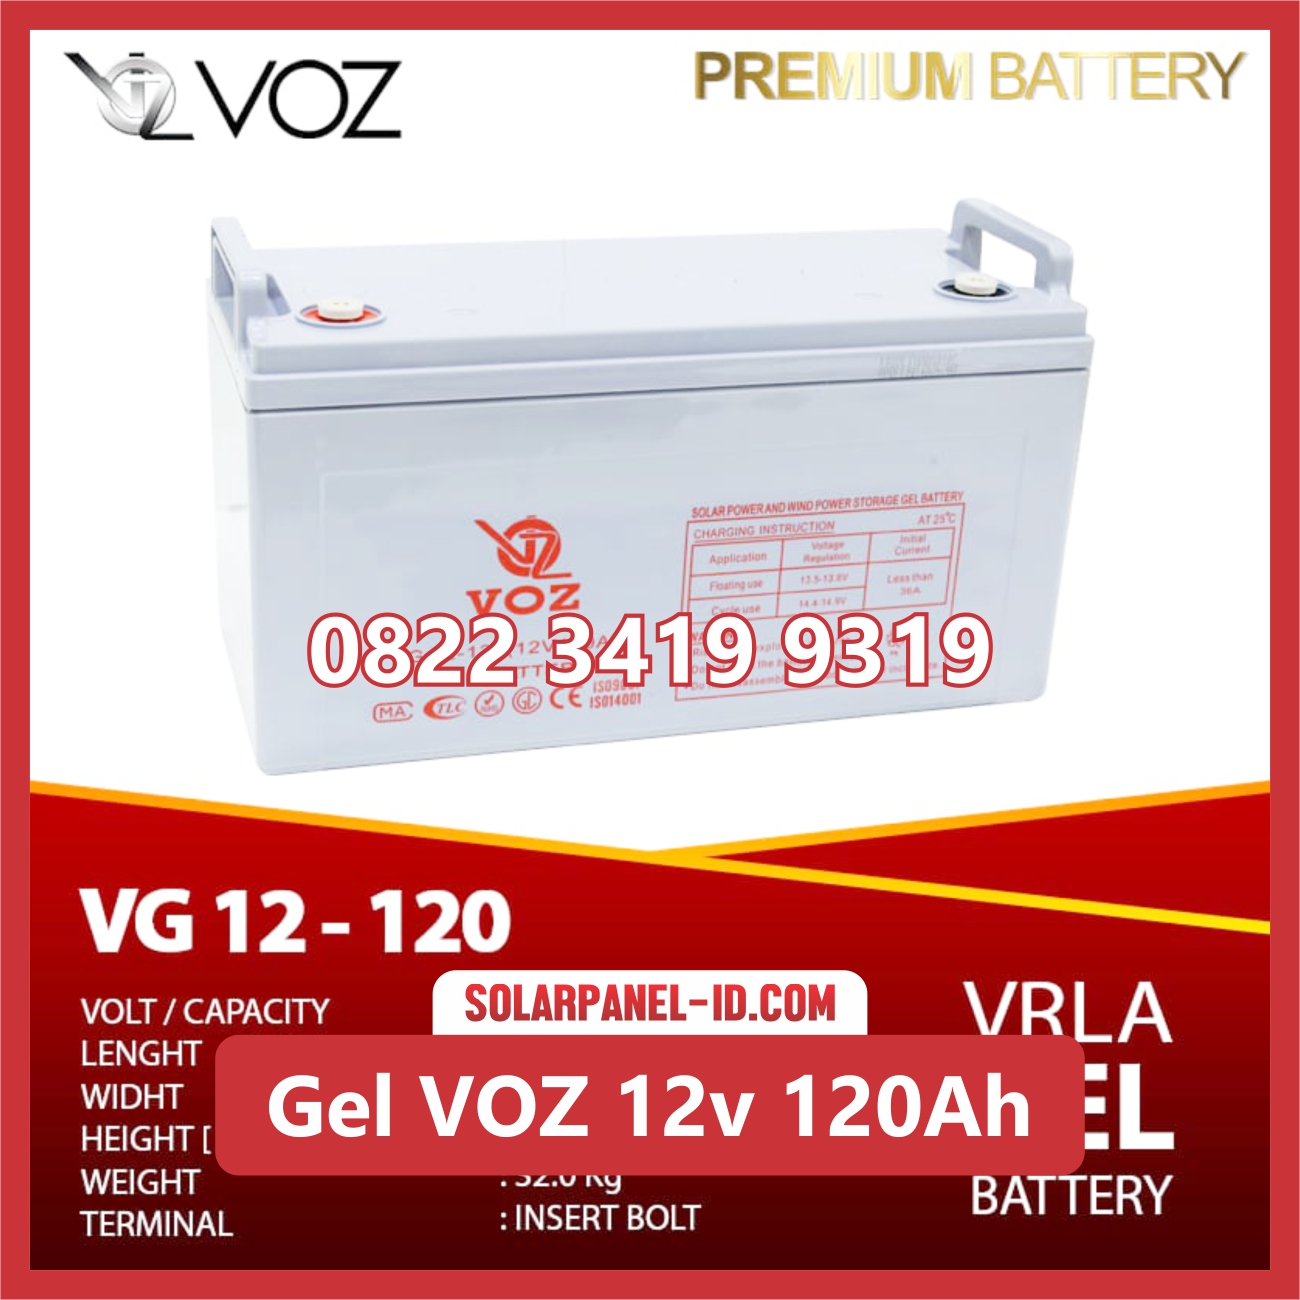 VOZ baterai kering gel 12v 120ah baterai pju tenaga surya